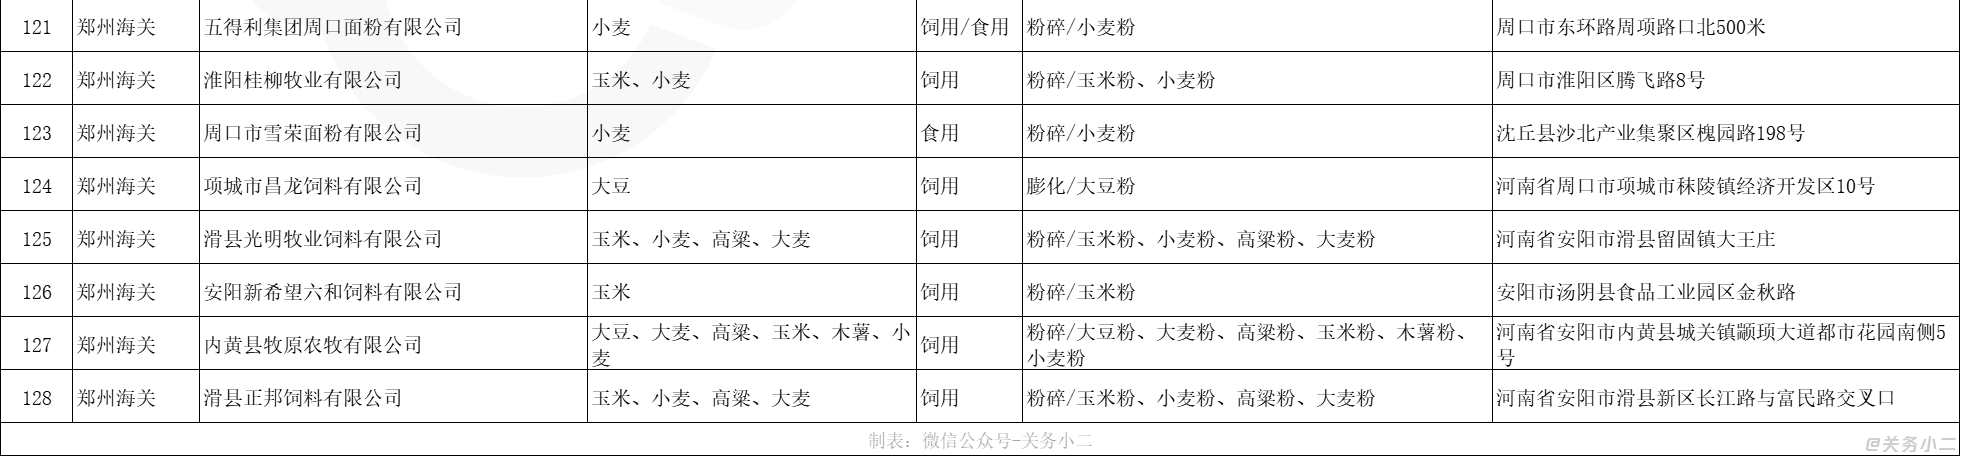 郑州海关指定进口粮食加工企业名单2_02.png